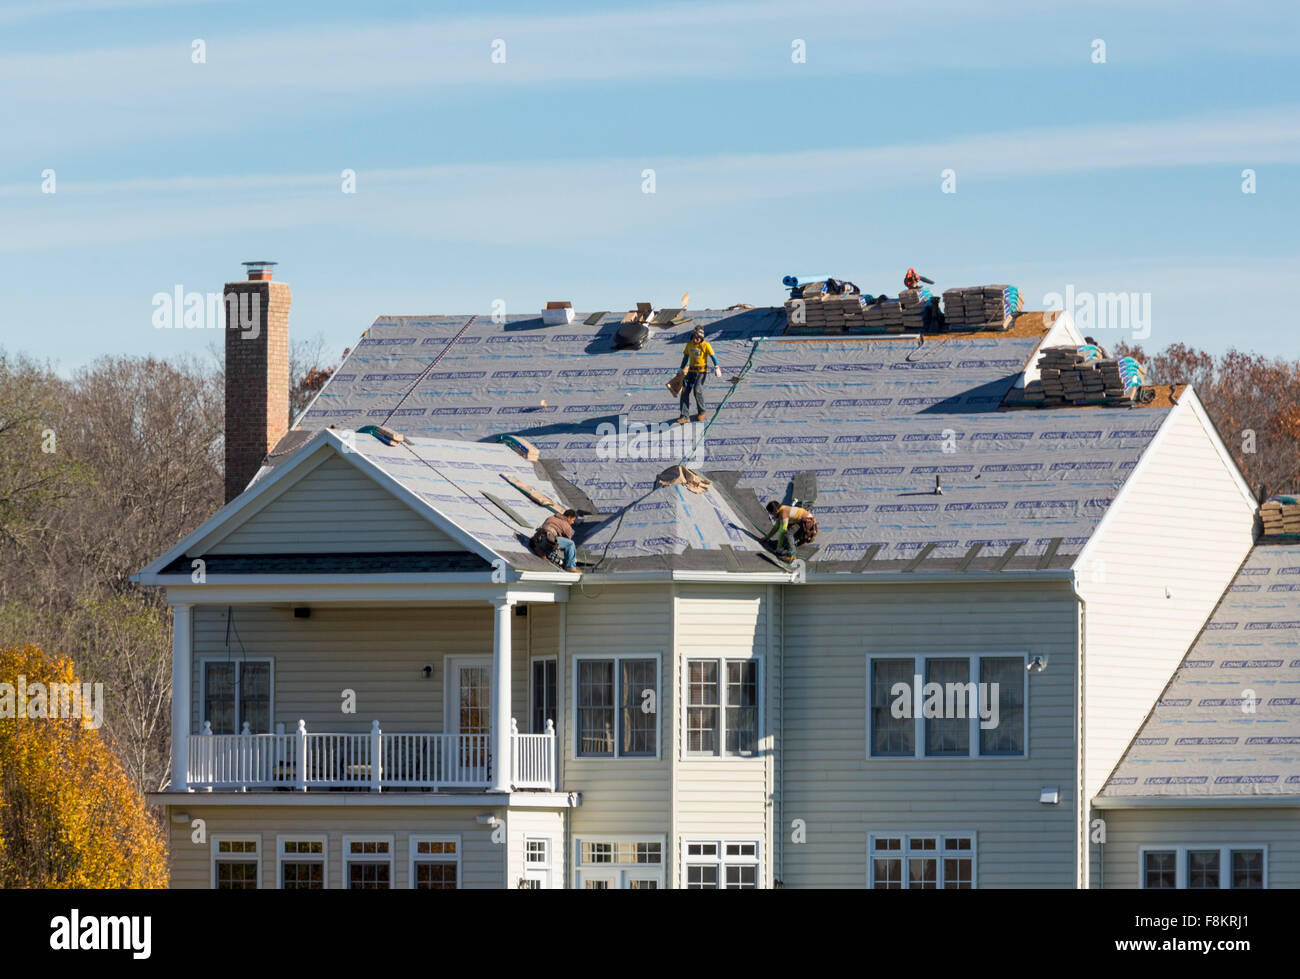 Obreros trabajando en el techo de un hogar estadounidense la sustitución de revestimientos asfálticos listo para reemplazar a Tejas en el techo, EE.UU. Foto de stock